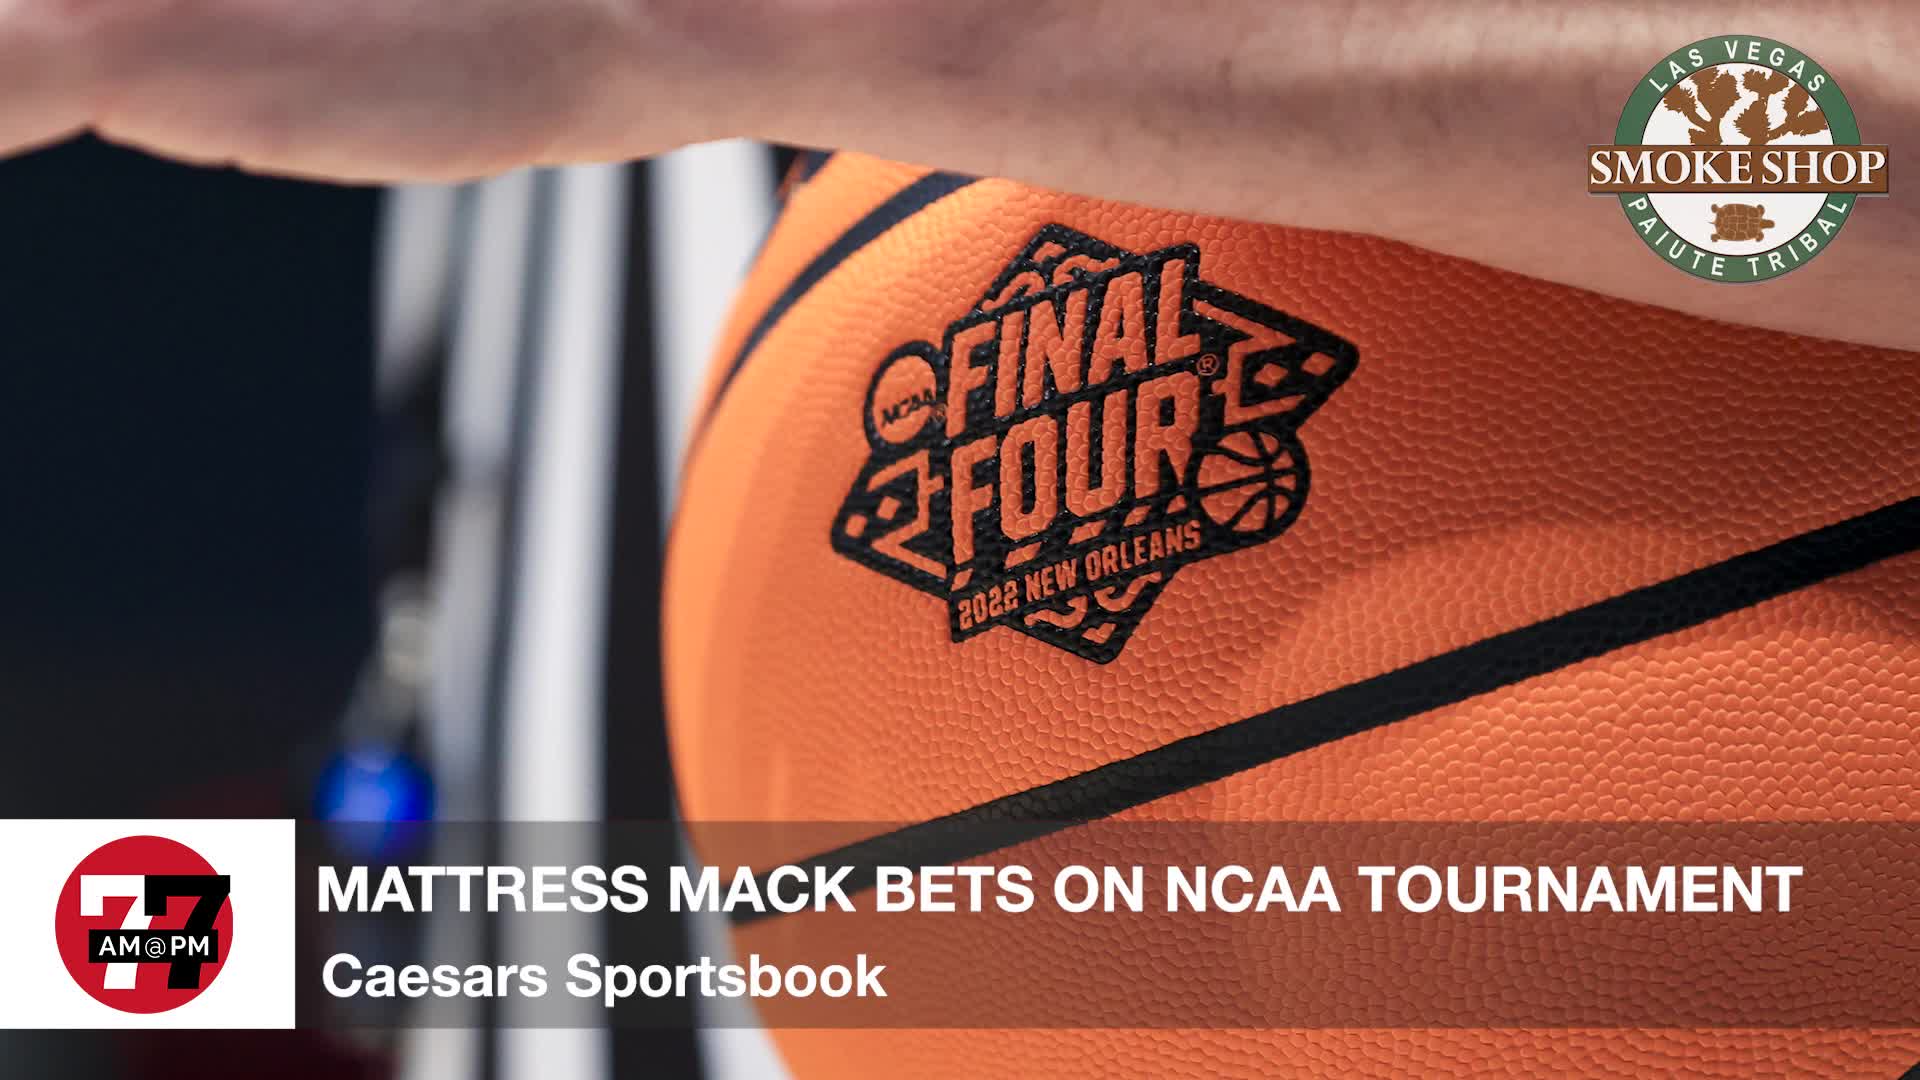 Mattress Mack Bets on NCAA Tournament